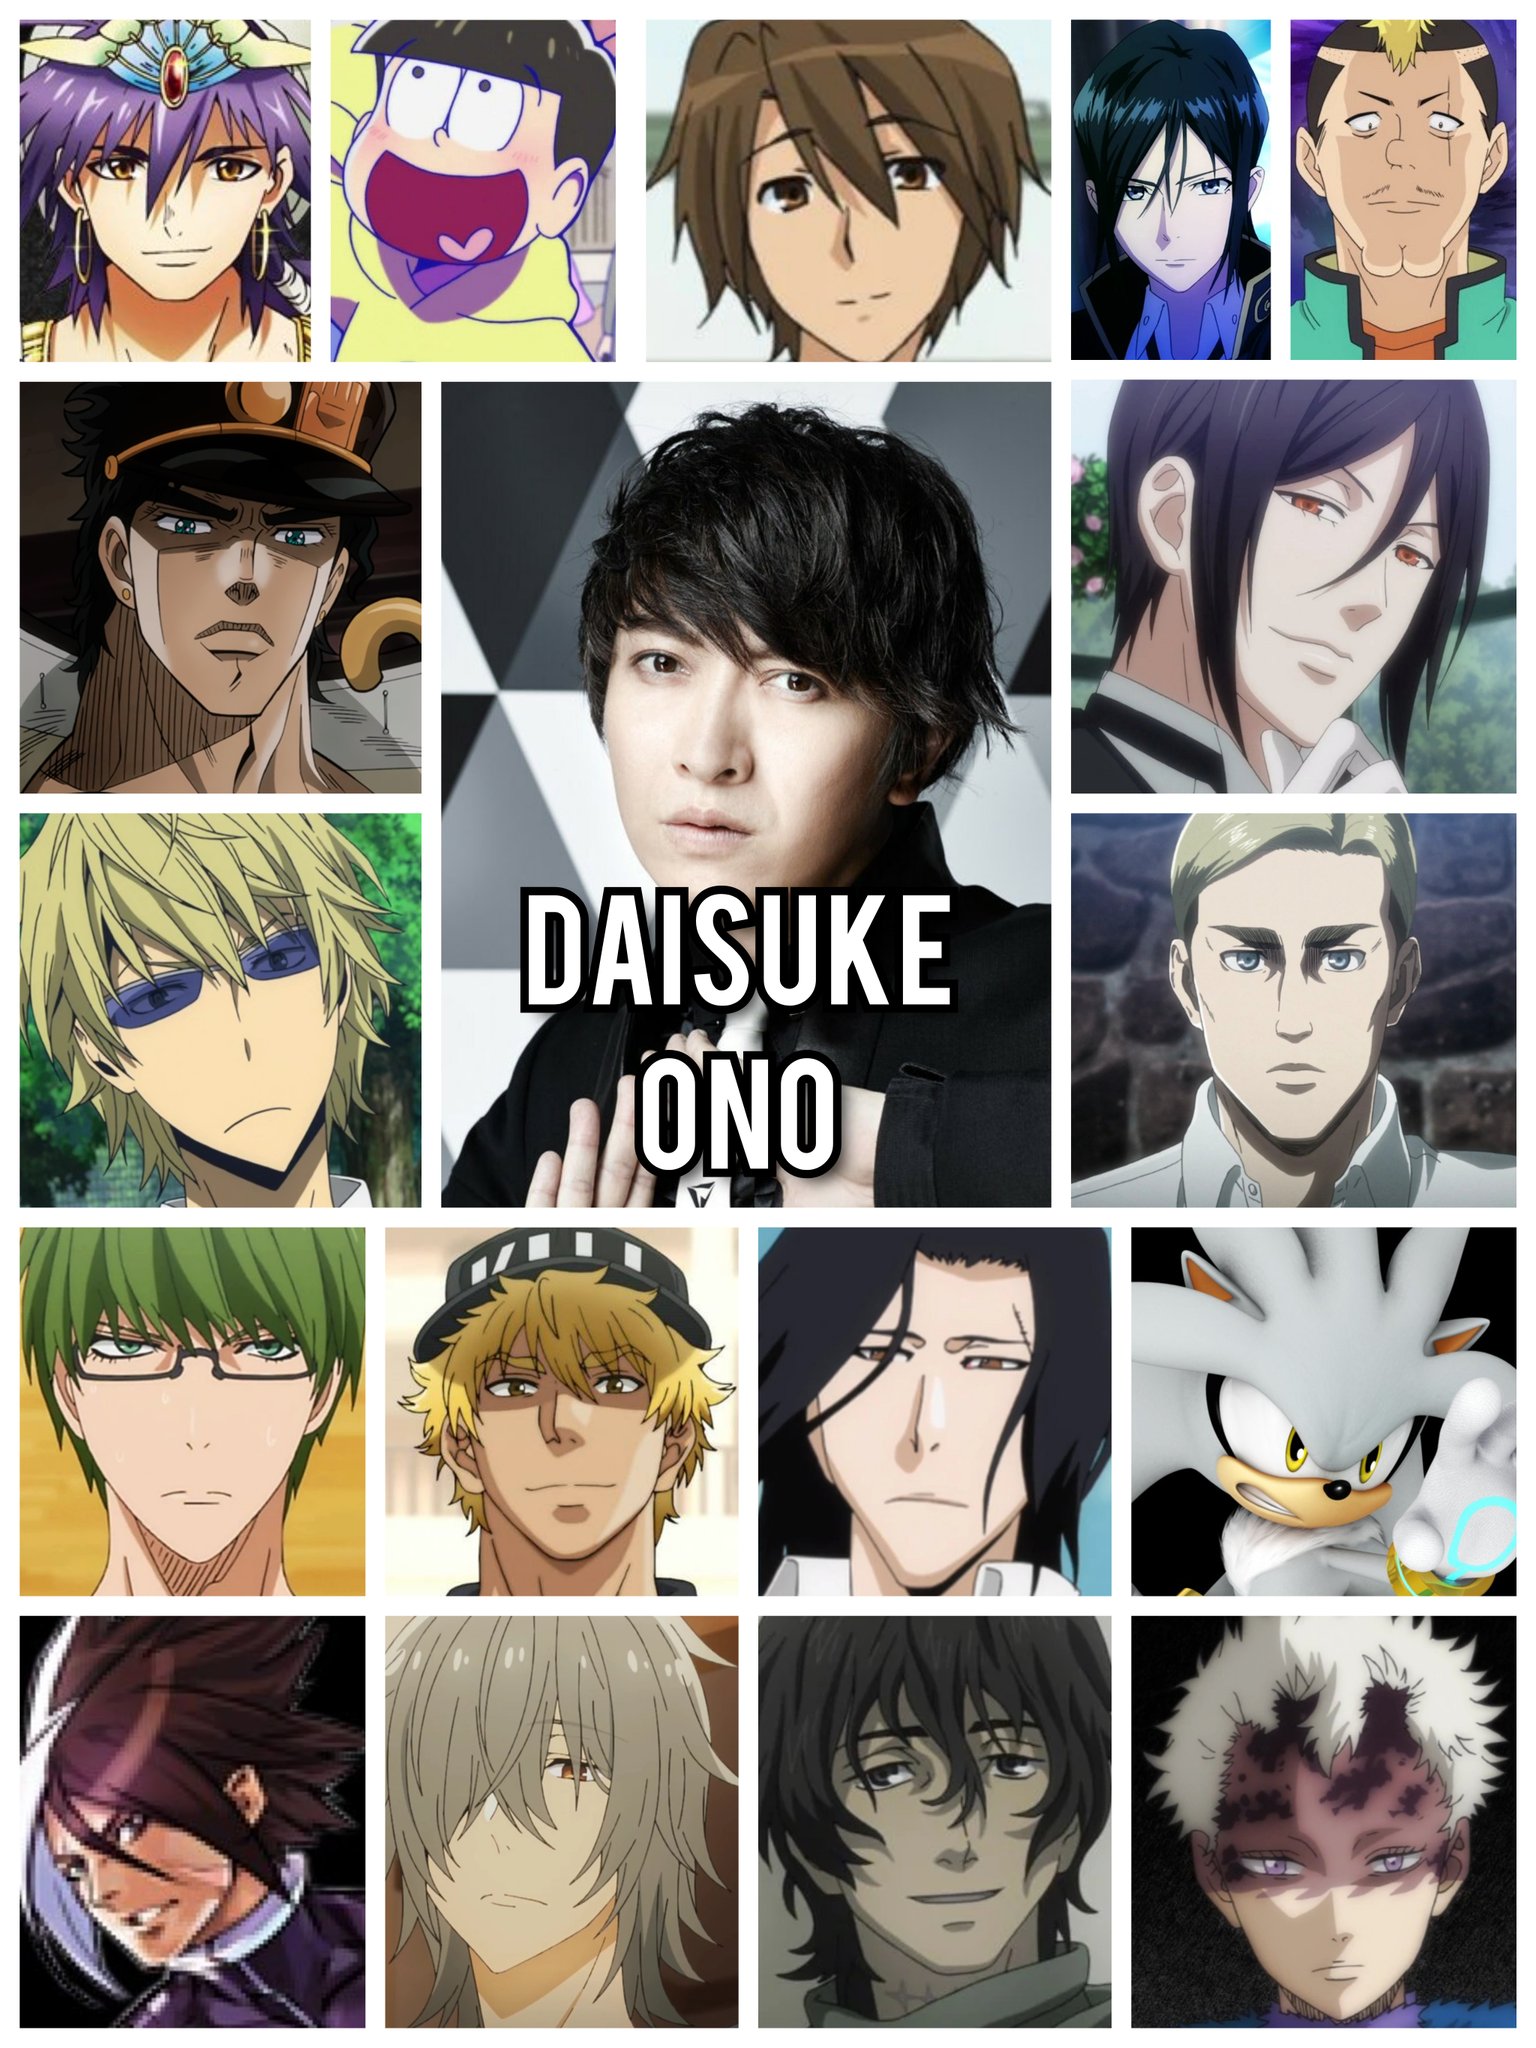 Eu acho que não meu brother - Jotaro Kujo Interpretado por Daisuke